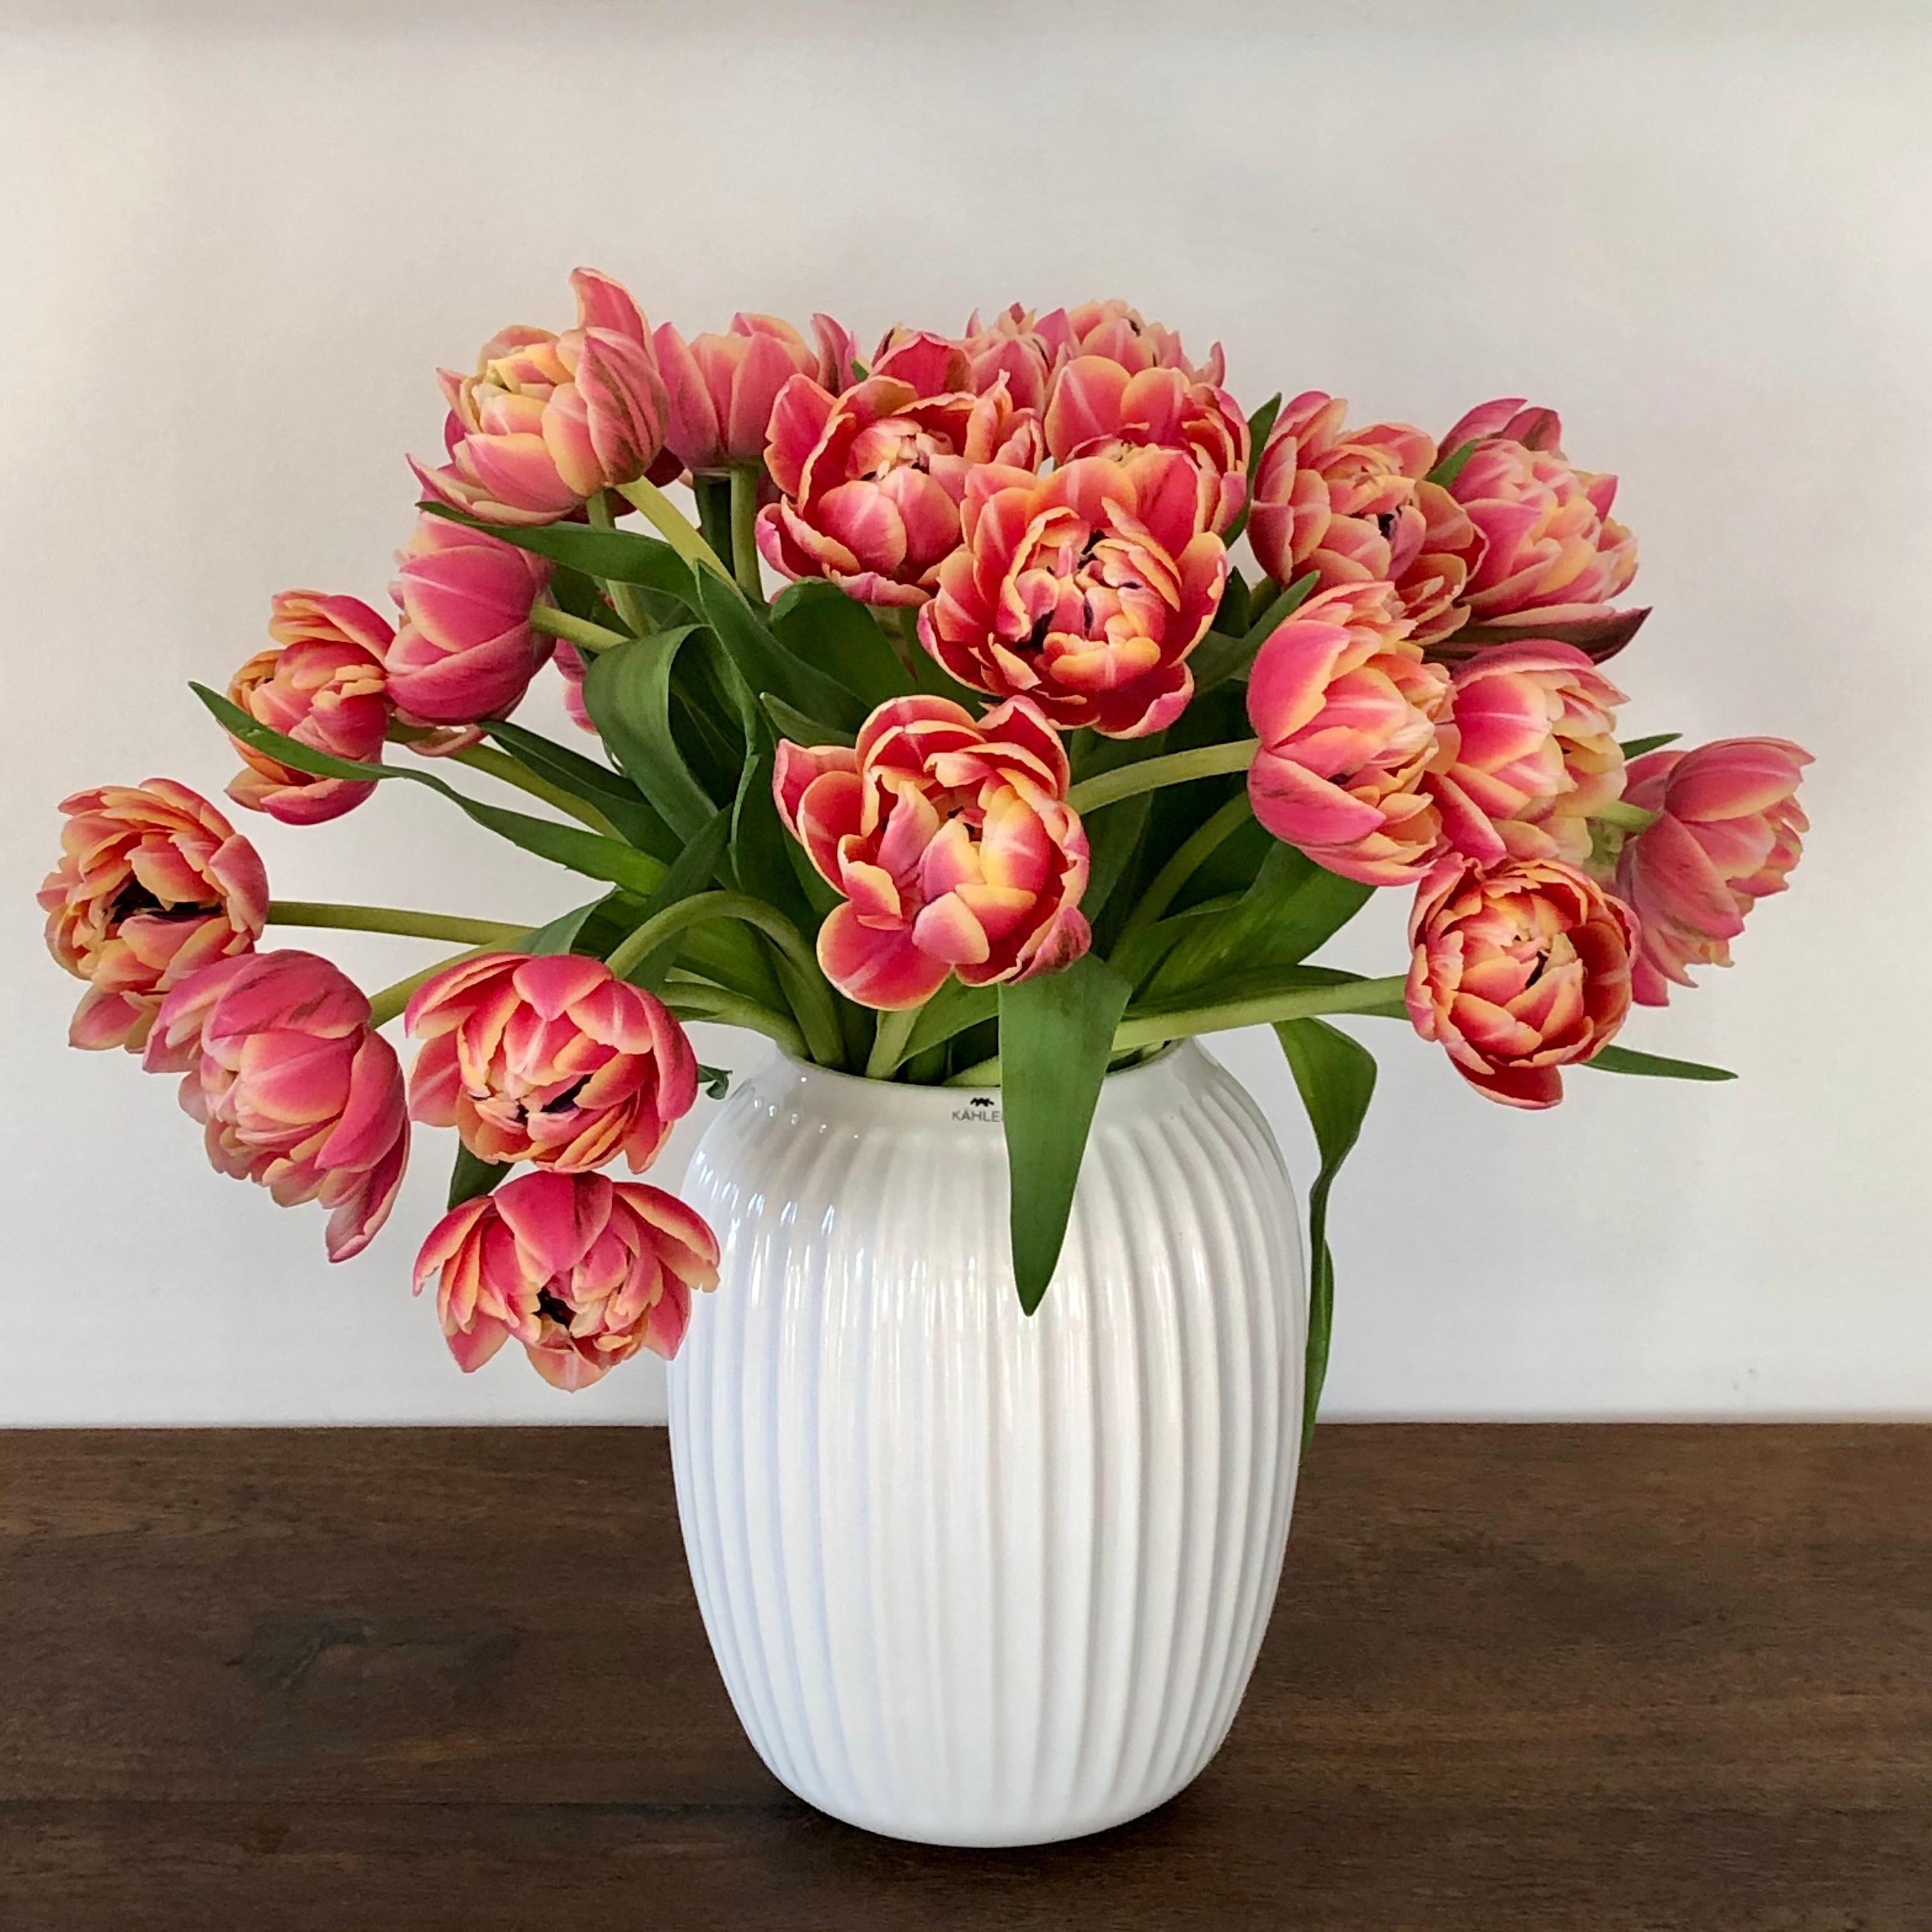 Fruhlingshafte Sonntagsgrusse Tulpen Blumenliebe